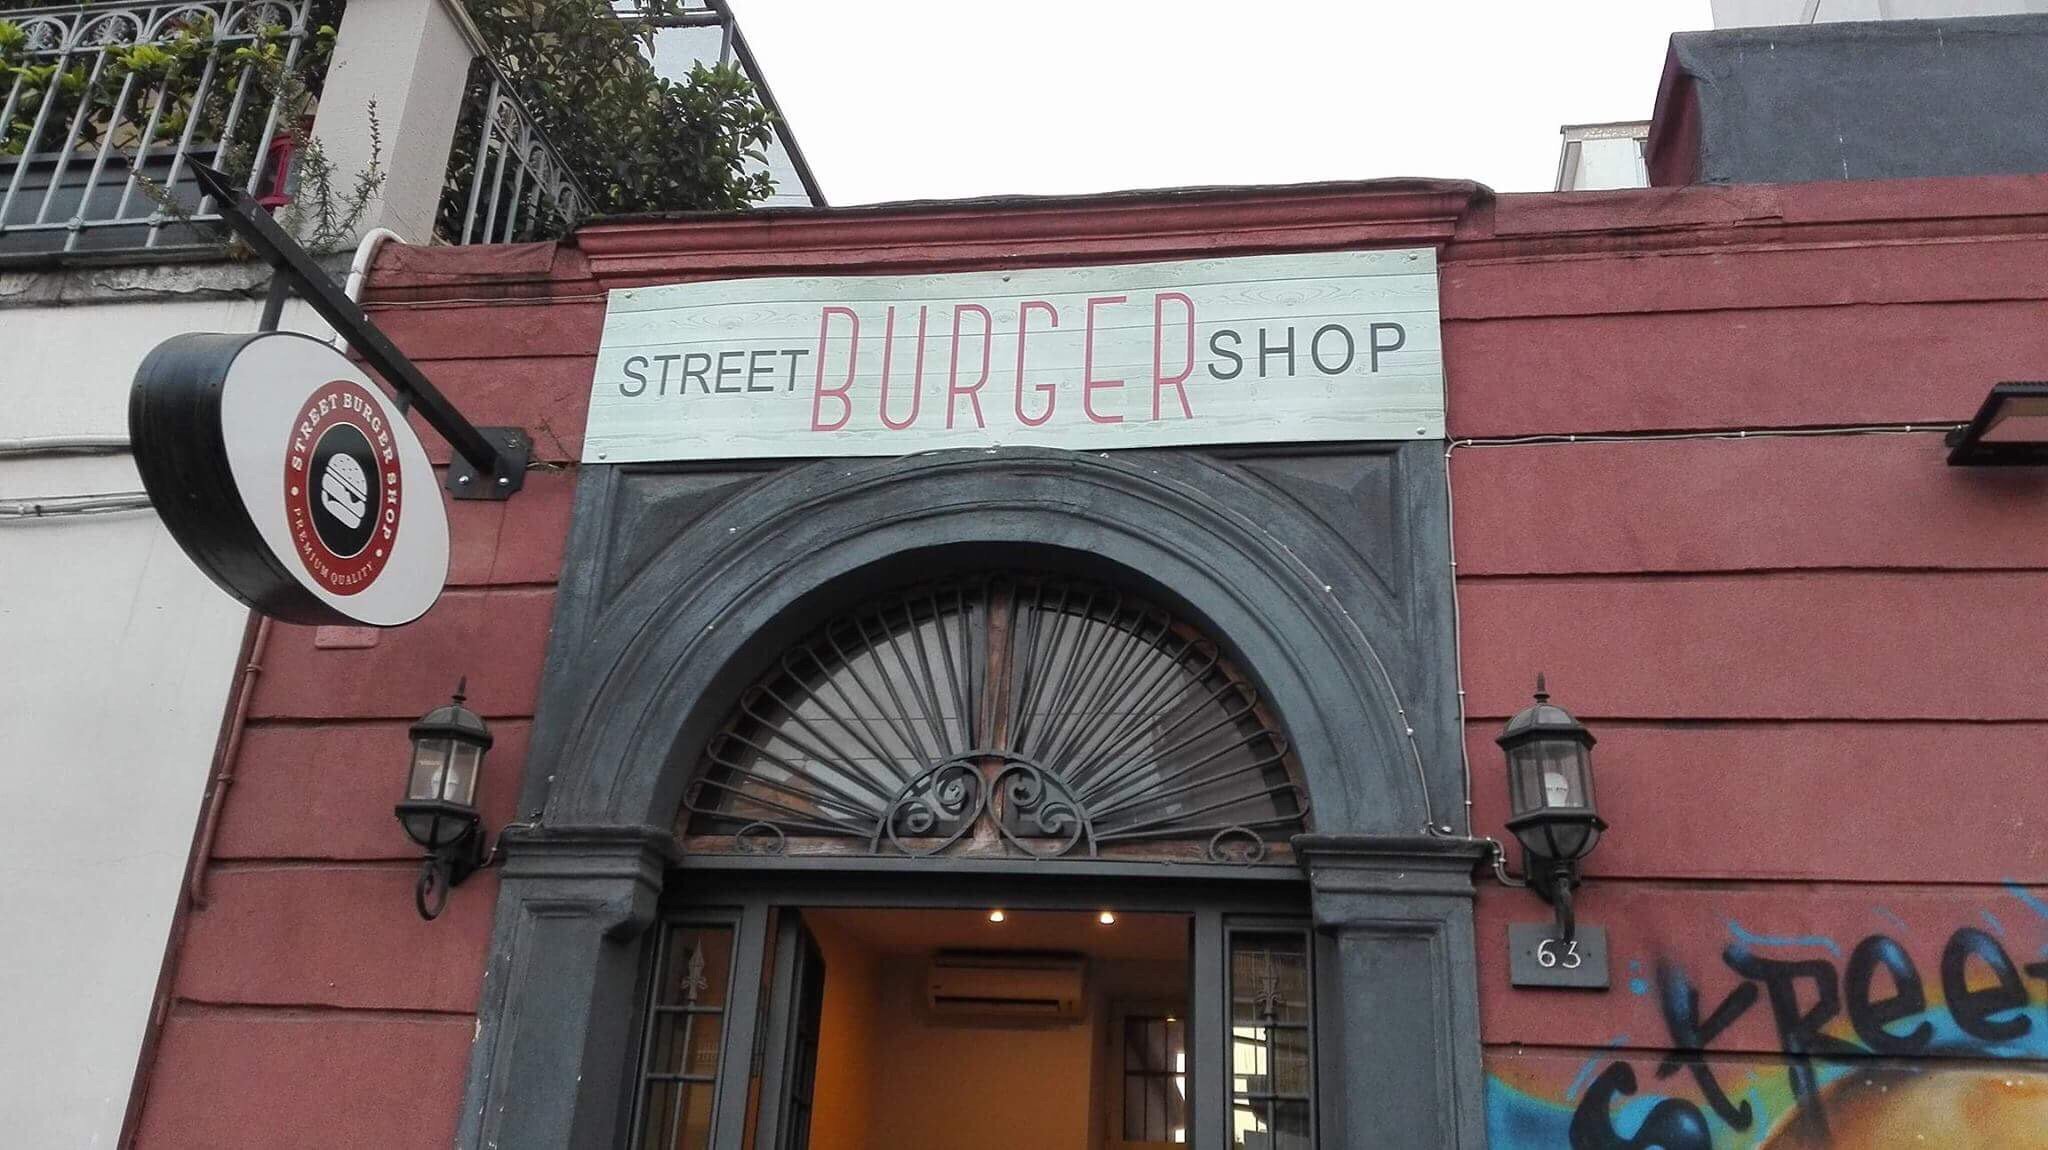 Street Burger Shop, Torre Del Greco